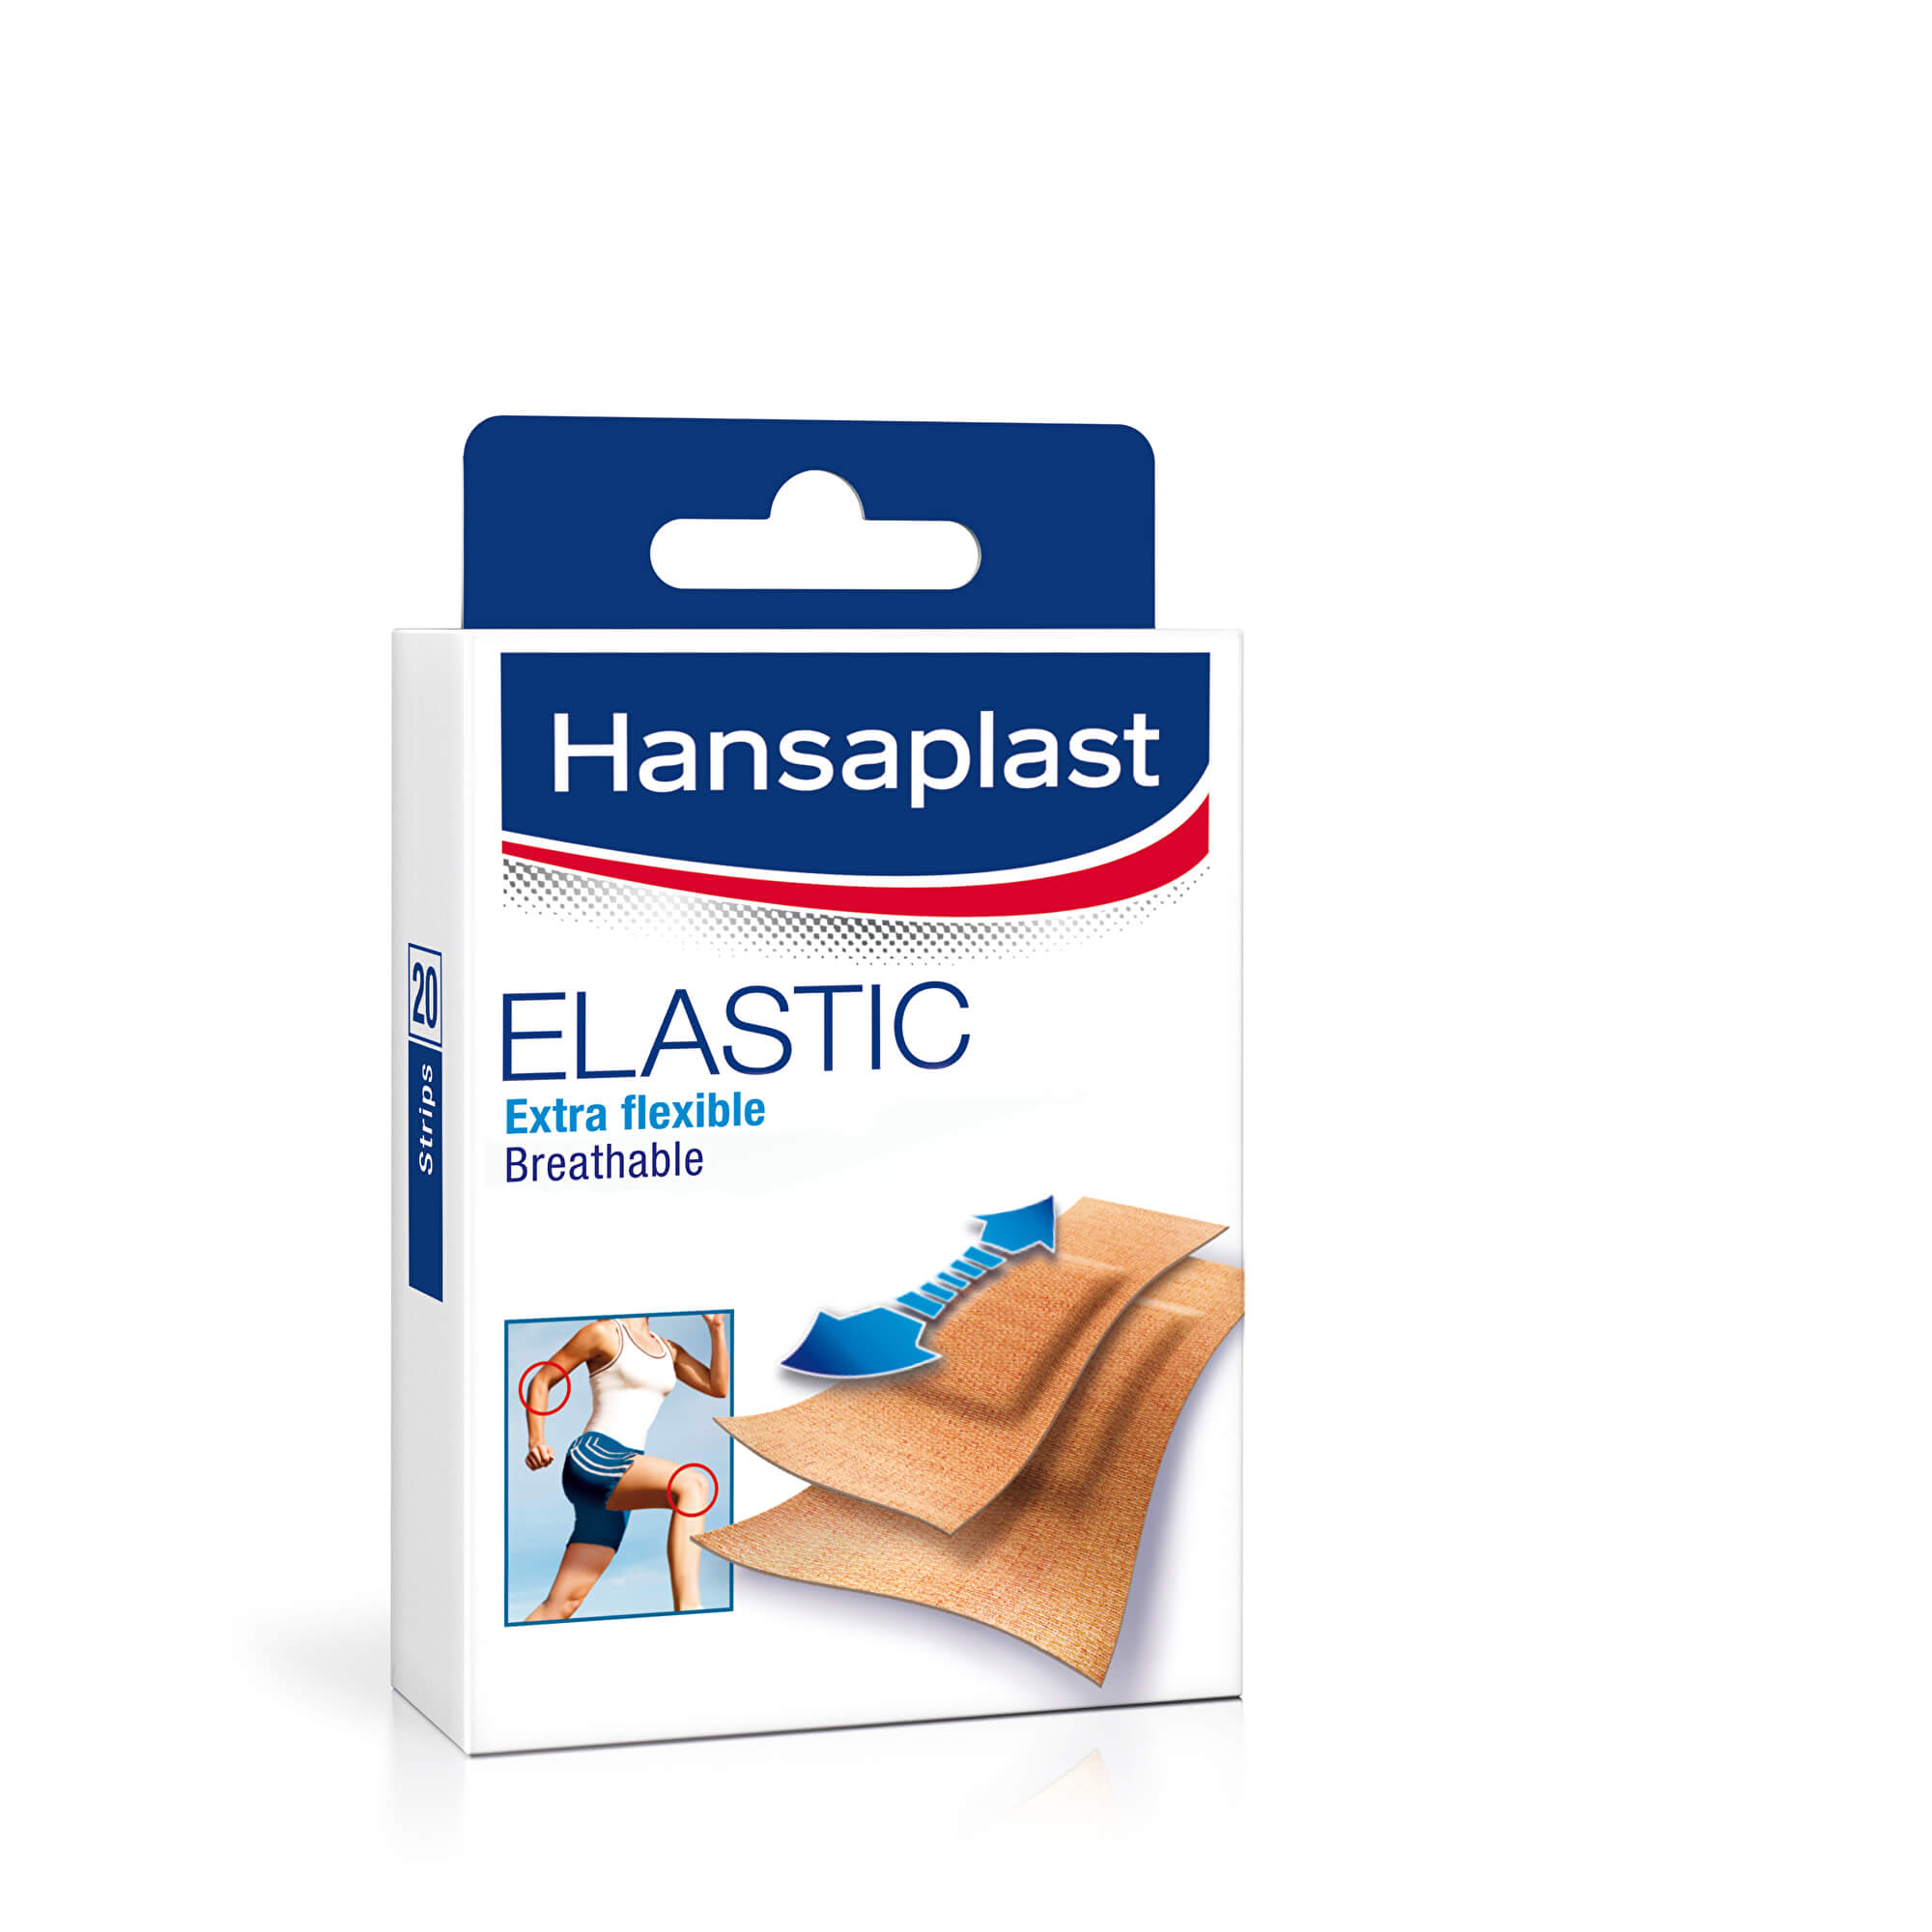 Hansaplast ELASTIC Extra flexible náplast, stripy 1x20 ks